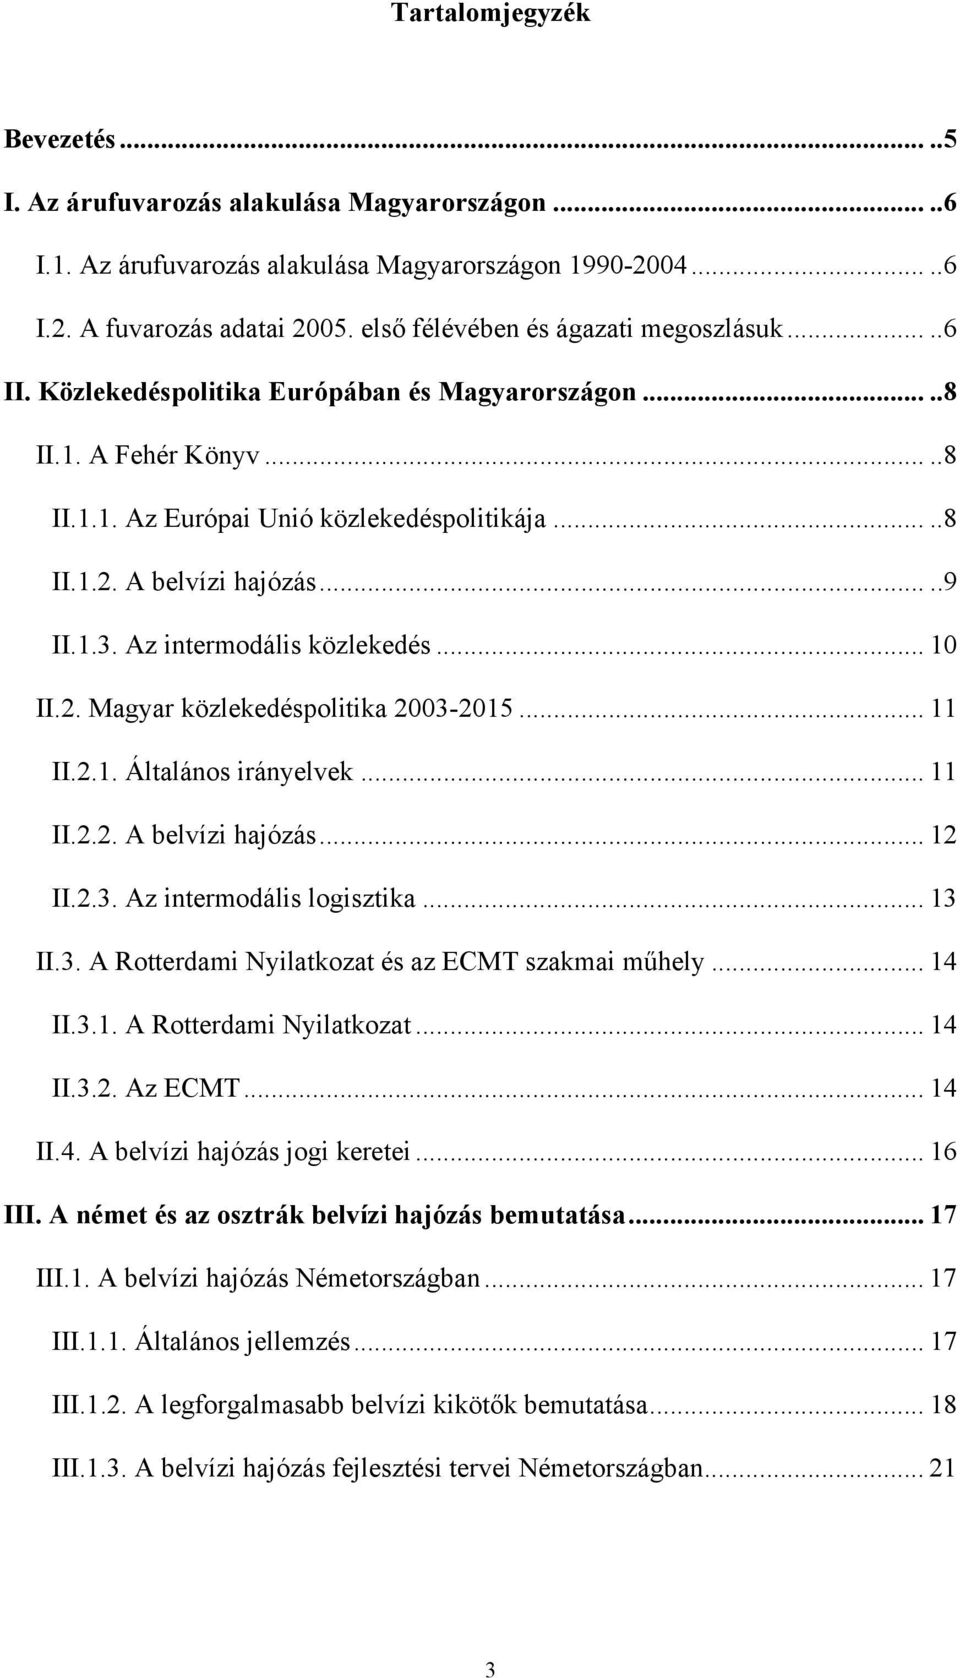 A belvízi hajózás.....9 II.1.3. Az intermodális közlekedés... 10 II.2. Magyar közlekedéspolitika 2003-2015... 11 II.2.1. Általános irányelvek... 11 II.2.2. A belvízi hajózás... 12 II.2.3. Az intermodális logisztika.